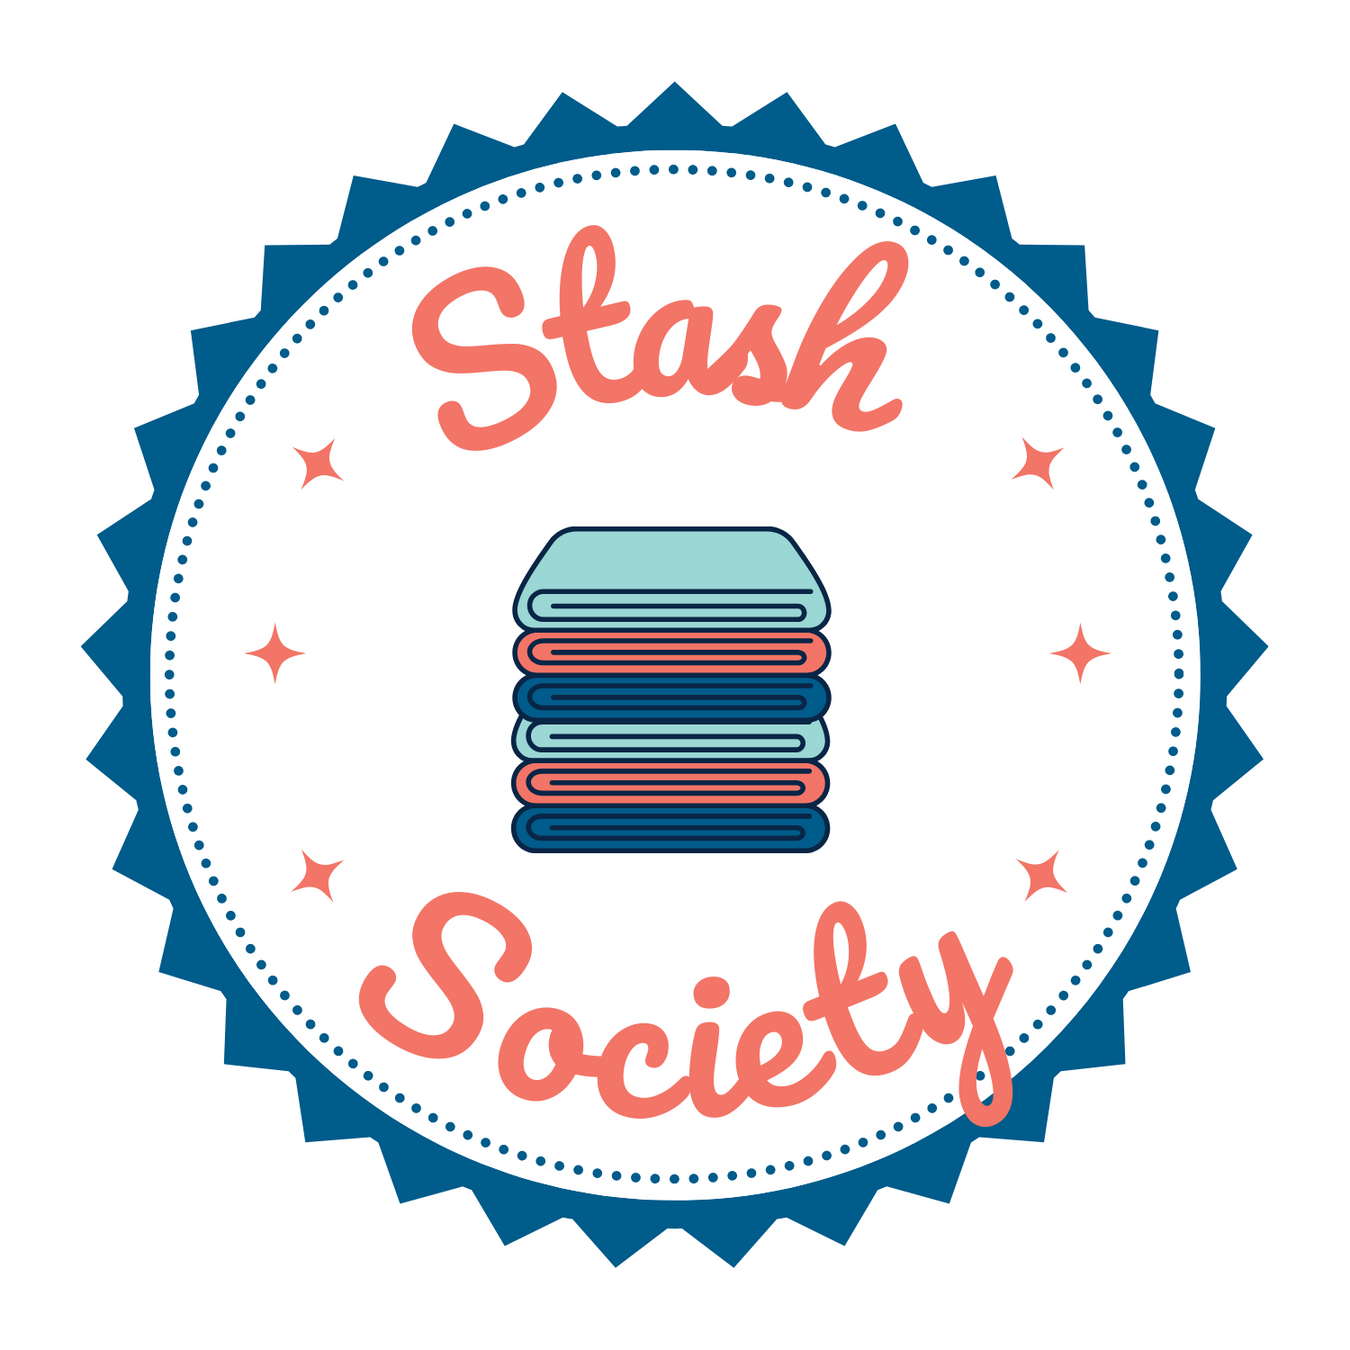 Stash Society: Solids